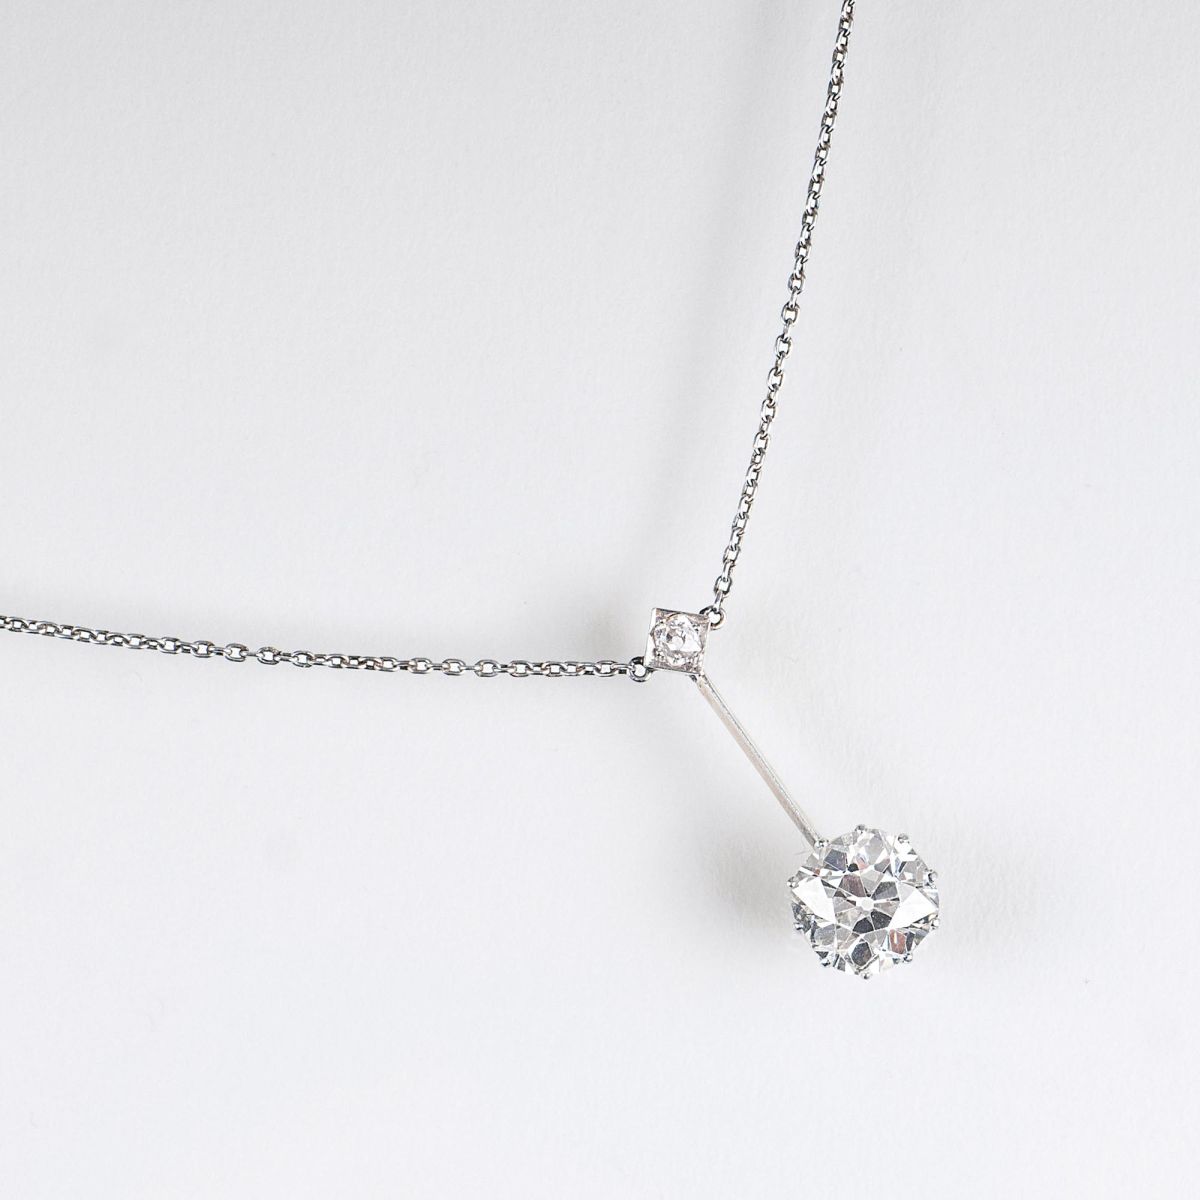 A Highcarat Art Nouveau Solitaire Diamond Pendant on Necklace